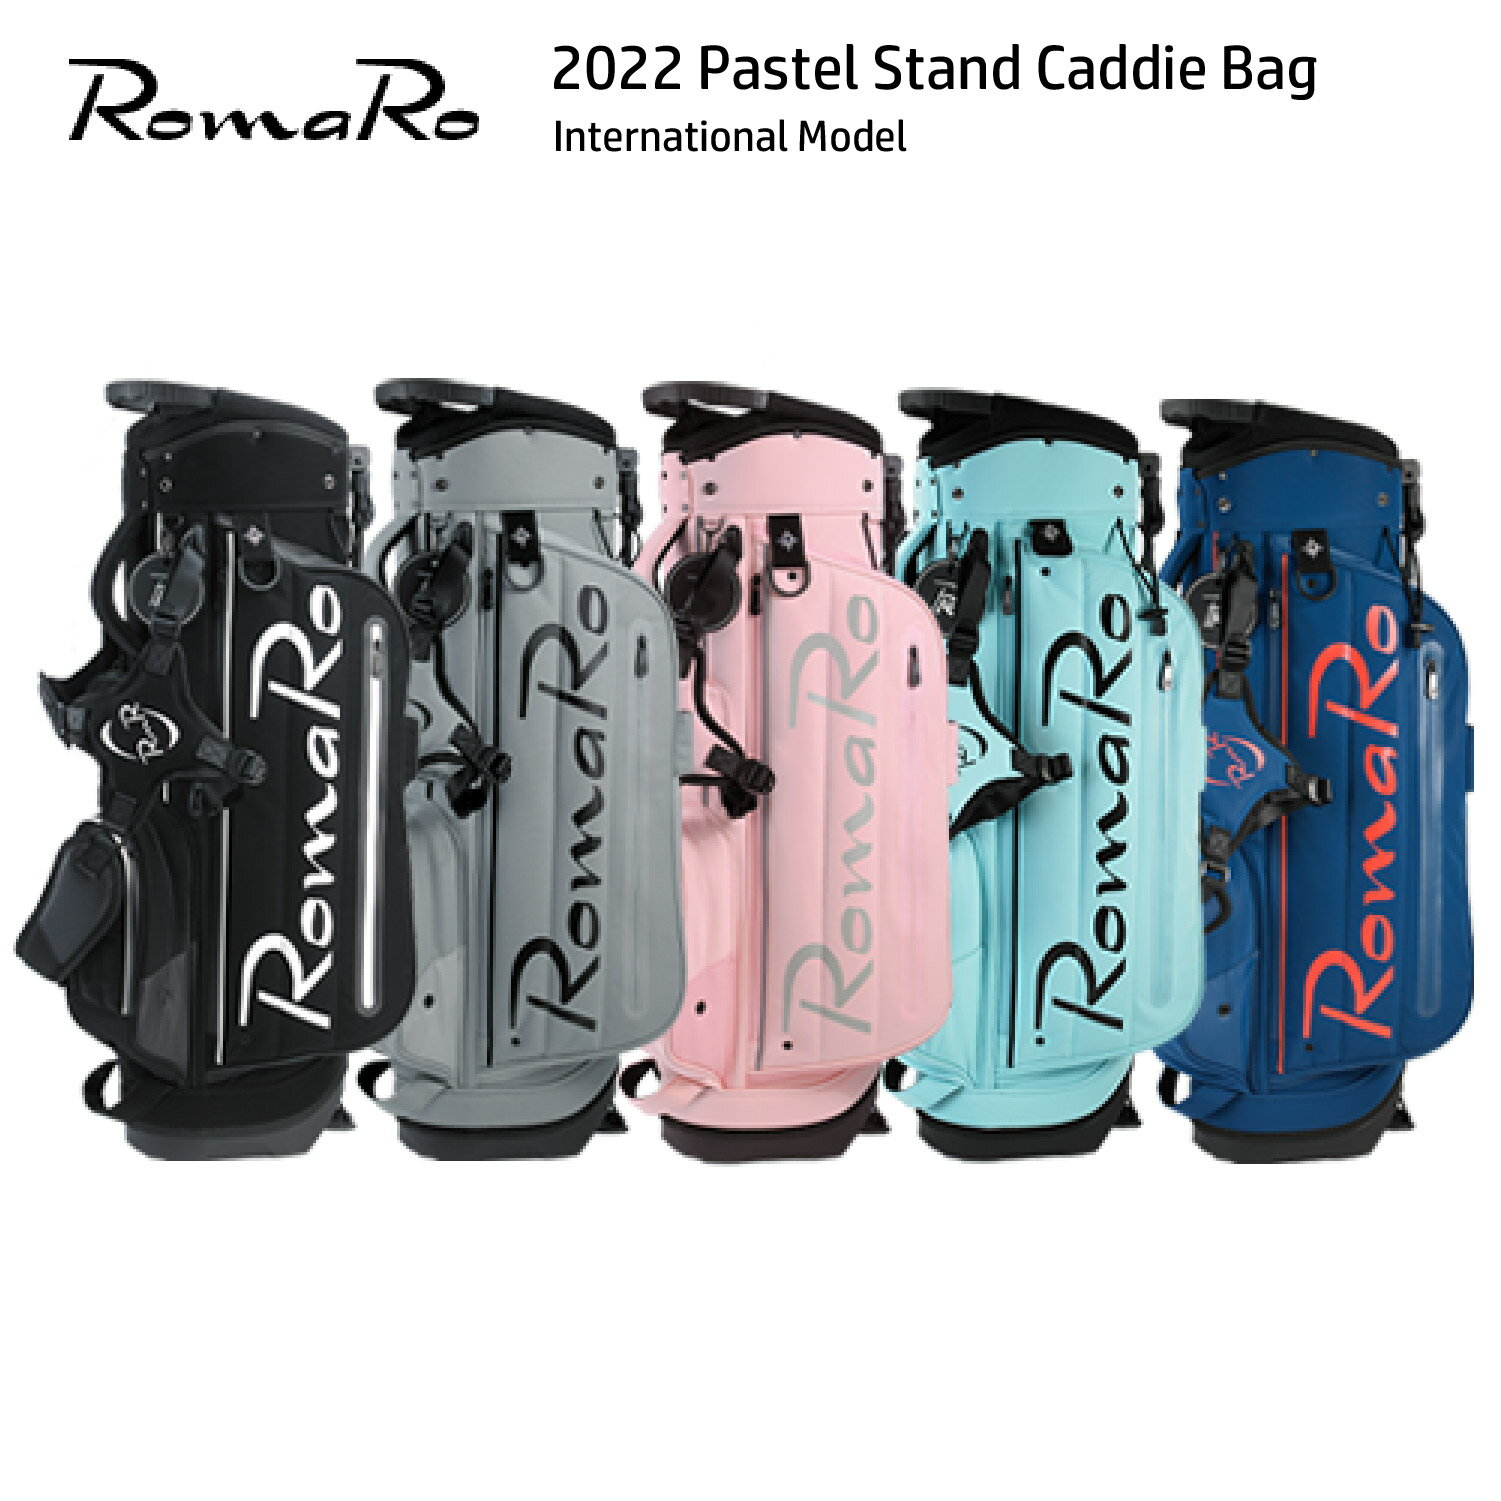 楽天ゴルフレスキューキャディバッグ RomaRo ロマロ 2022 Pastel Stand Caddie Bag パステル International Model インターナショナルモデル ゴルフ スタッフバッグ 8.5型